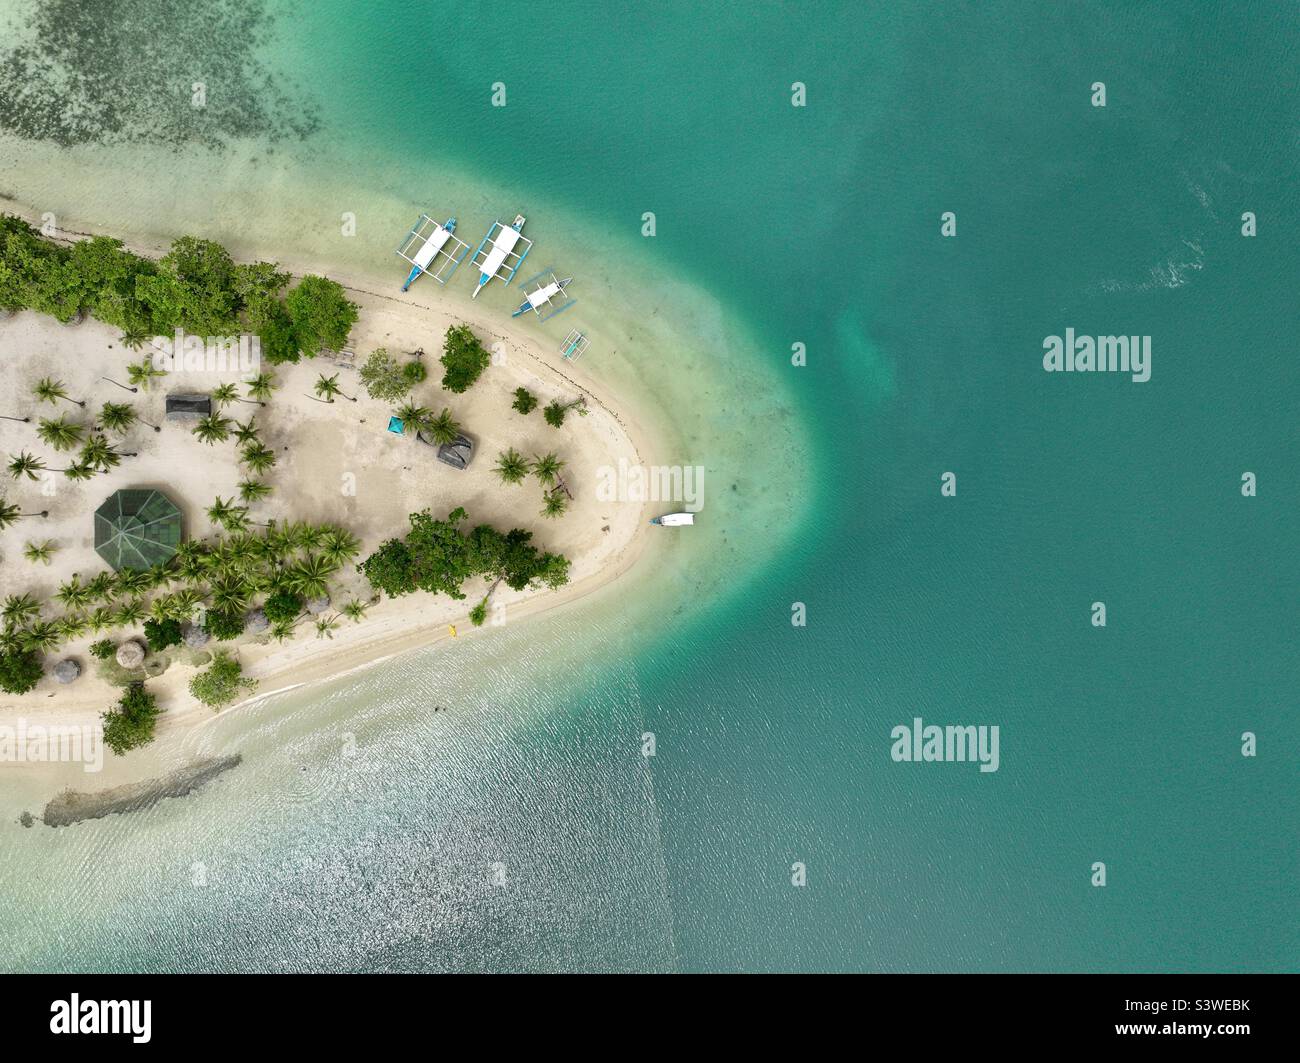 Vivi la vita in un'isola incontaminata con una spiaggia bianca circondata da acqua smeraldo. Scatto aereo di vivere in un'isola isolata. Foto Stock